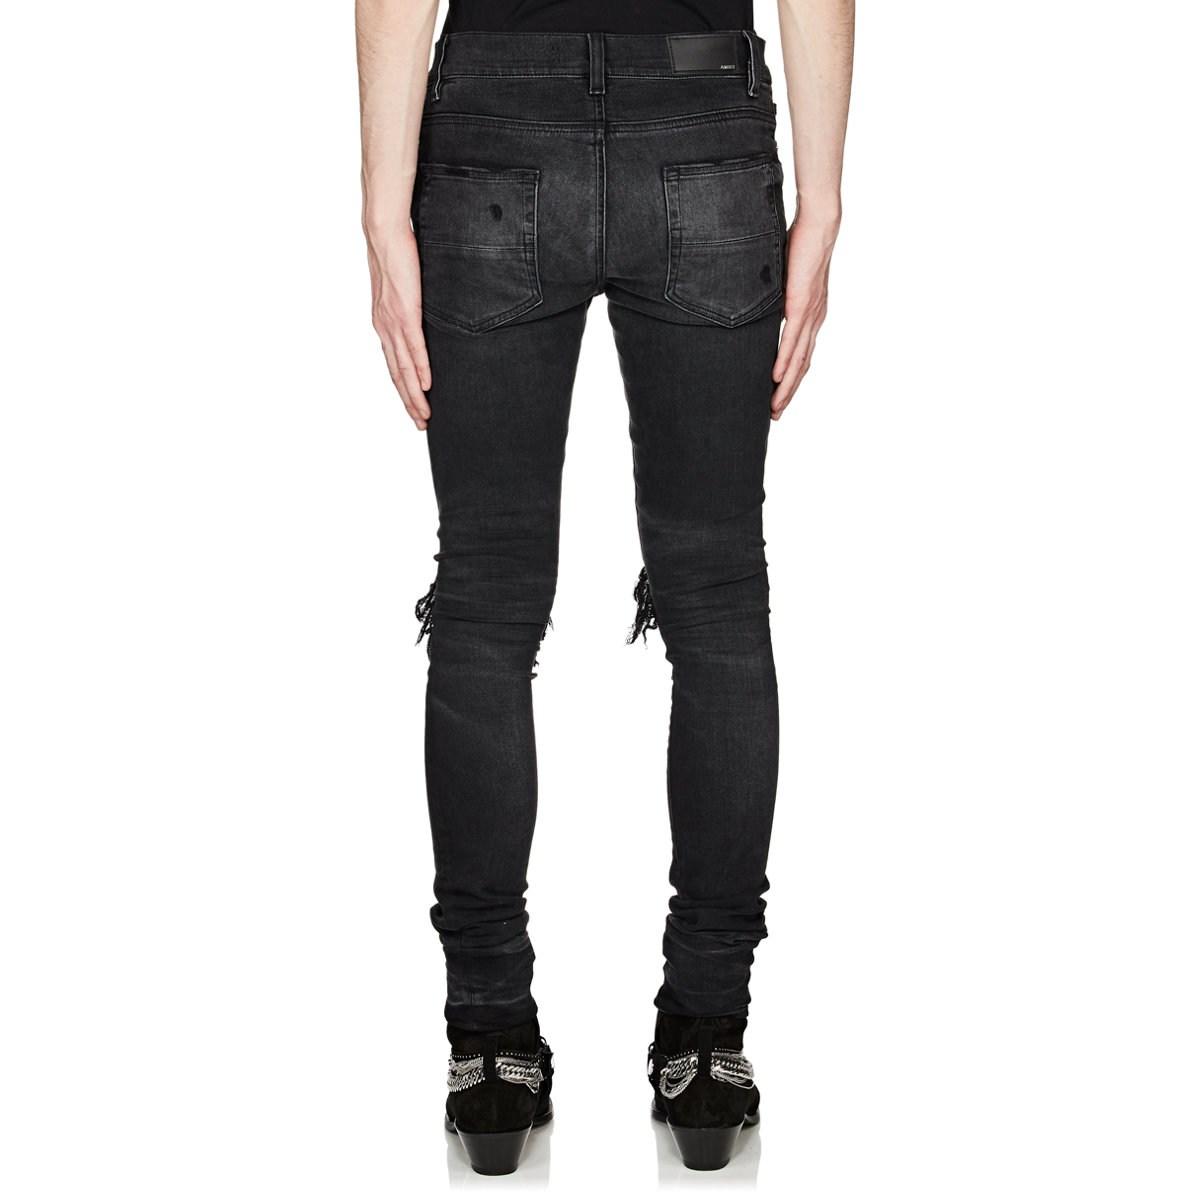 Amiri Denim Mx1 Slim Jeans in Black for Men - Lyst